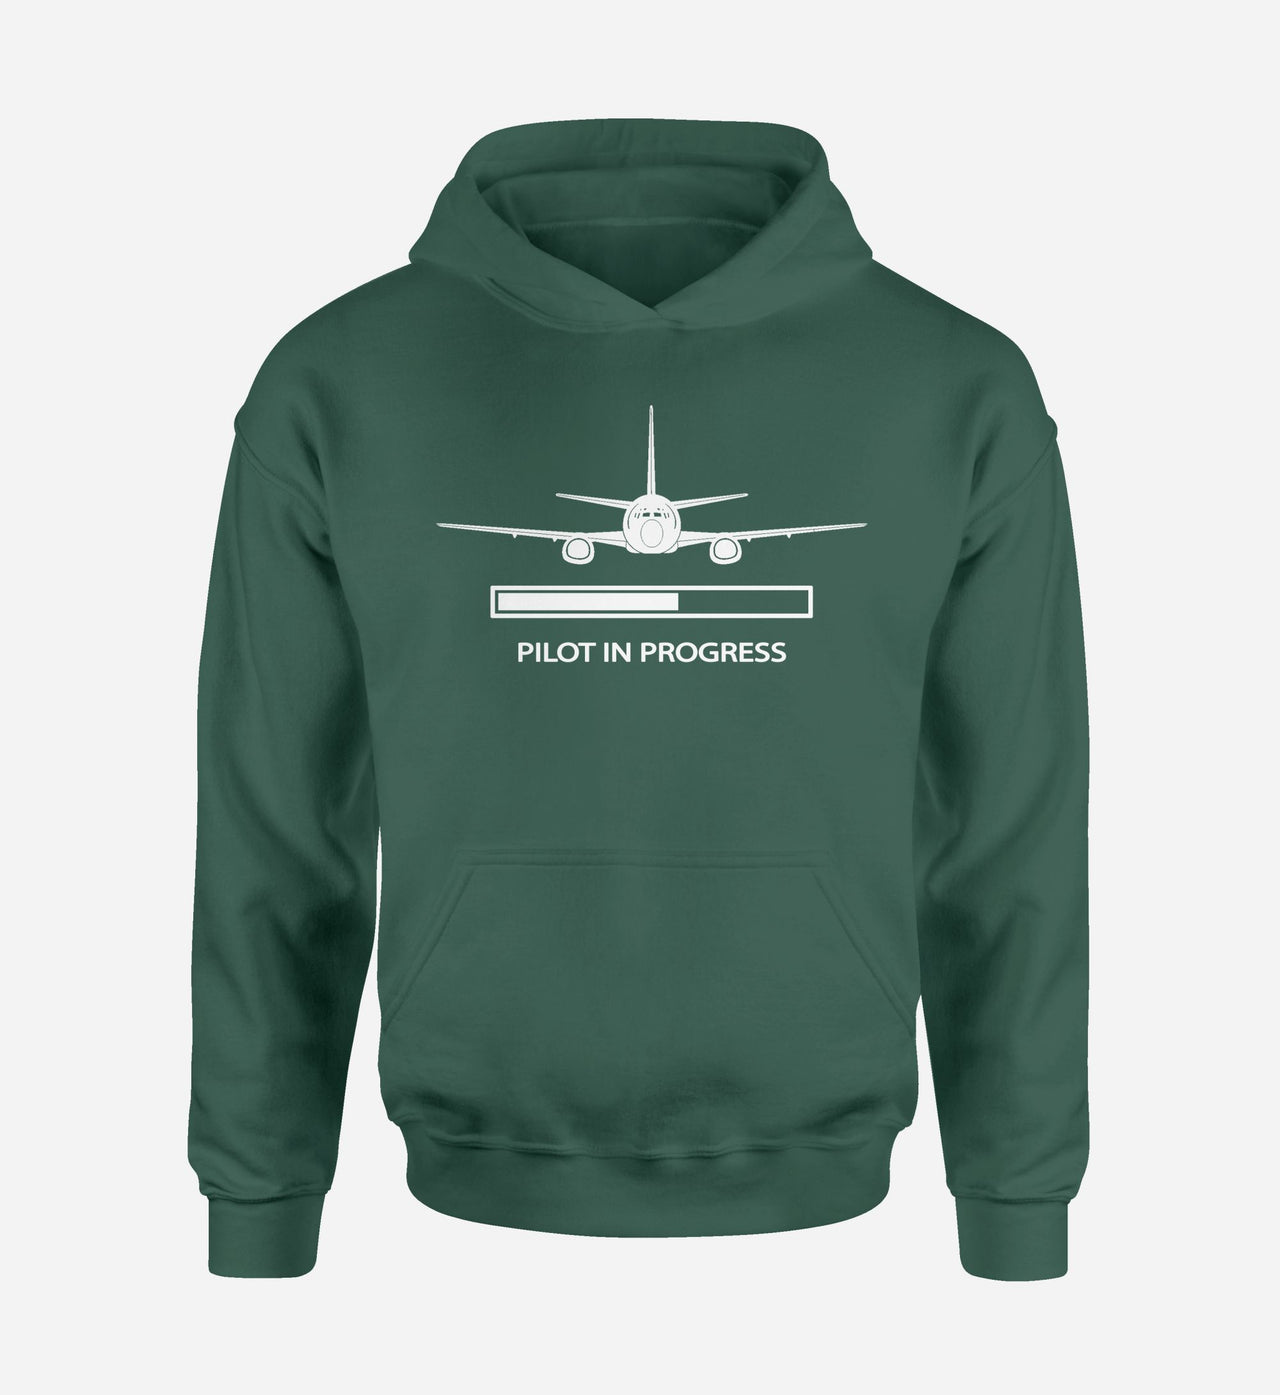 Pilot In Progress Designed Hoodies